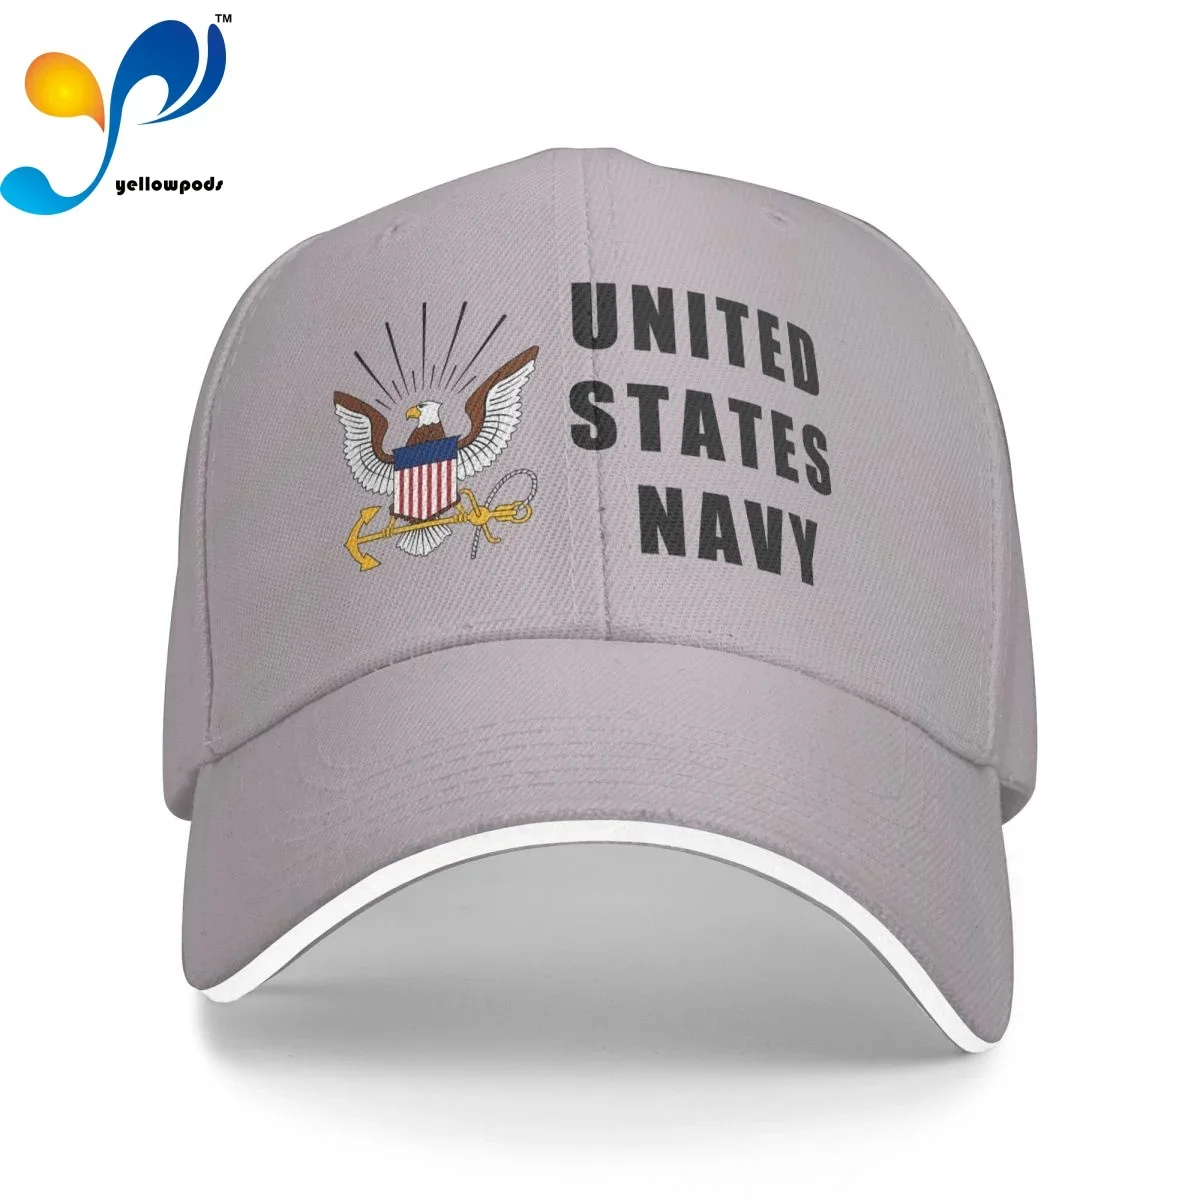 

Хлопковая кепка унисекс для женщин и мужчин, модная бейсболка в стиле военно-морского флота США, регулируемая яркая